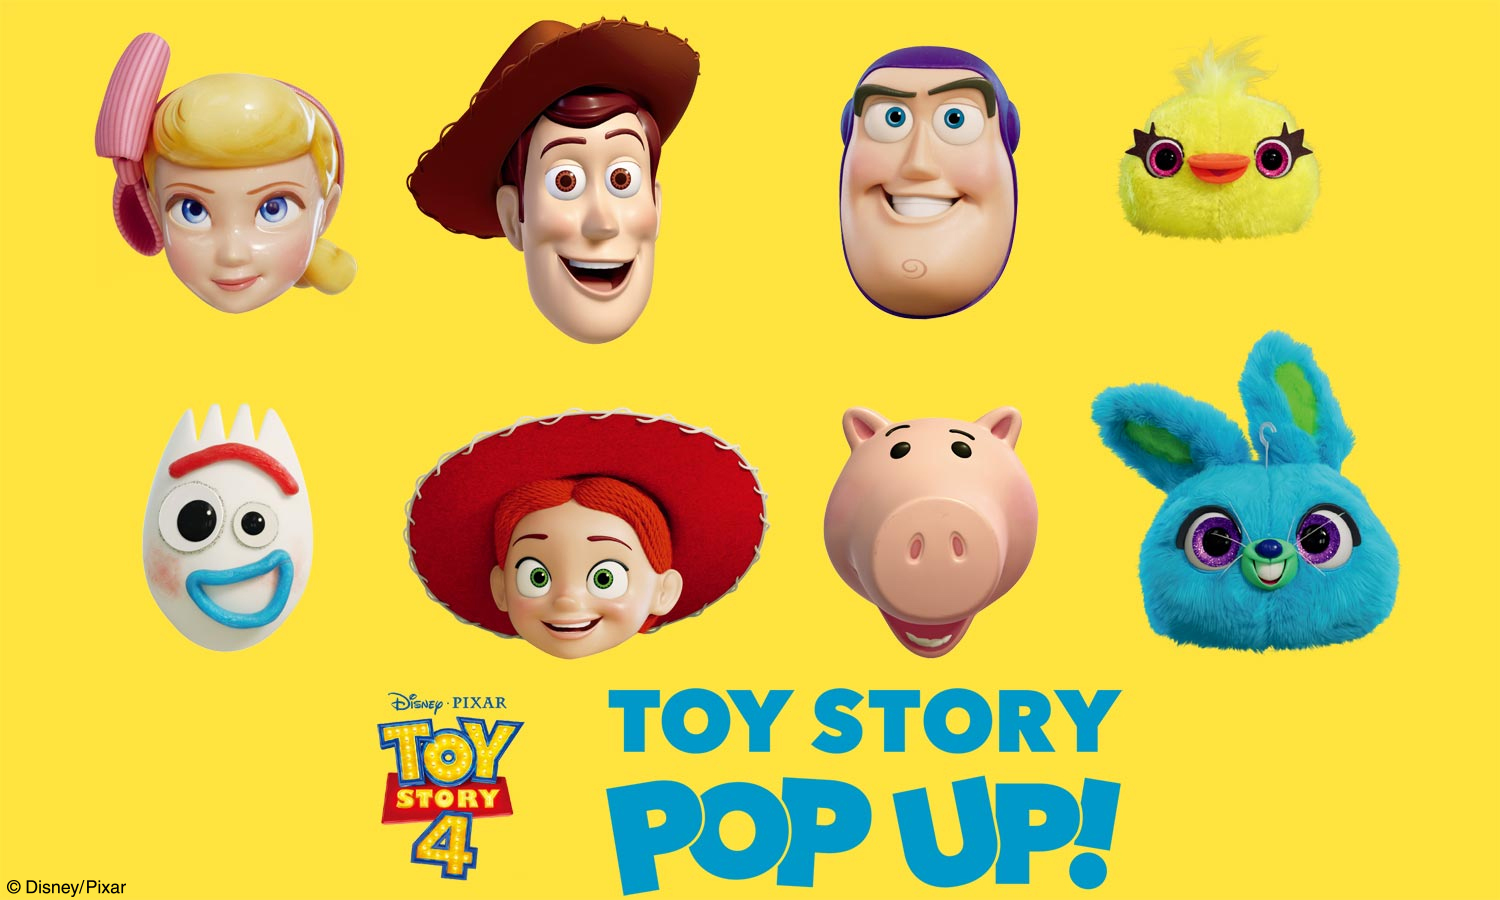 ここでしか手に入らないアイテムをはじめ トイ ストーリー アイテムを集めた期間限定ショップ Toy Story Pop Up 大阪 あべのキューズモールに9 13 金 オープン 株式会社スモール プラネットのプレスリリース